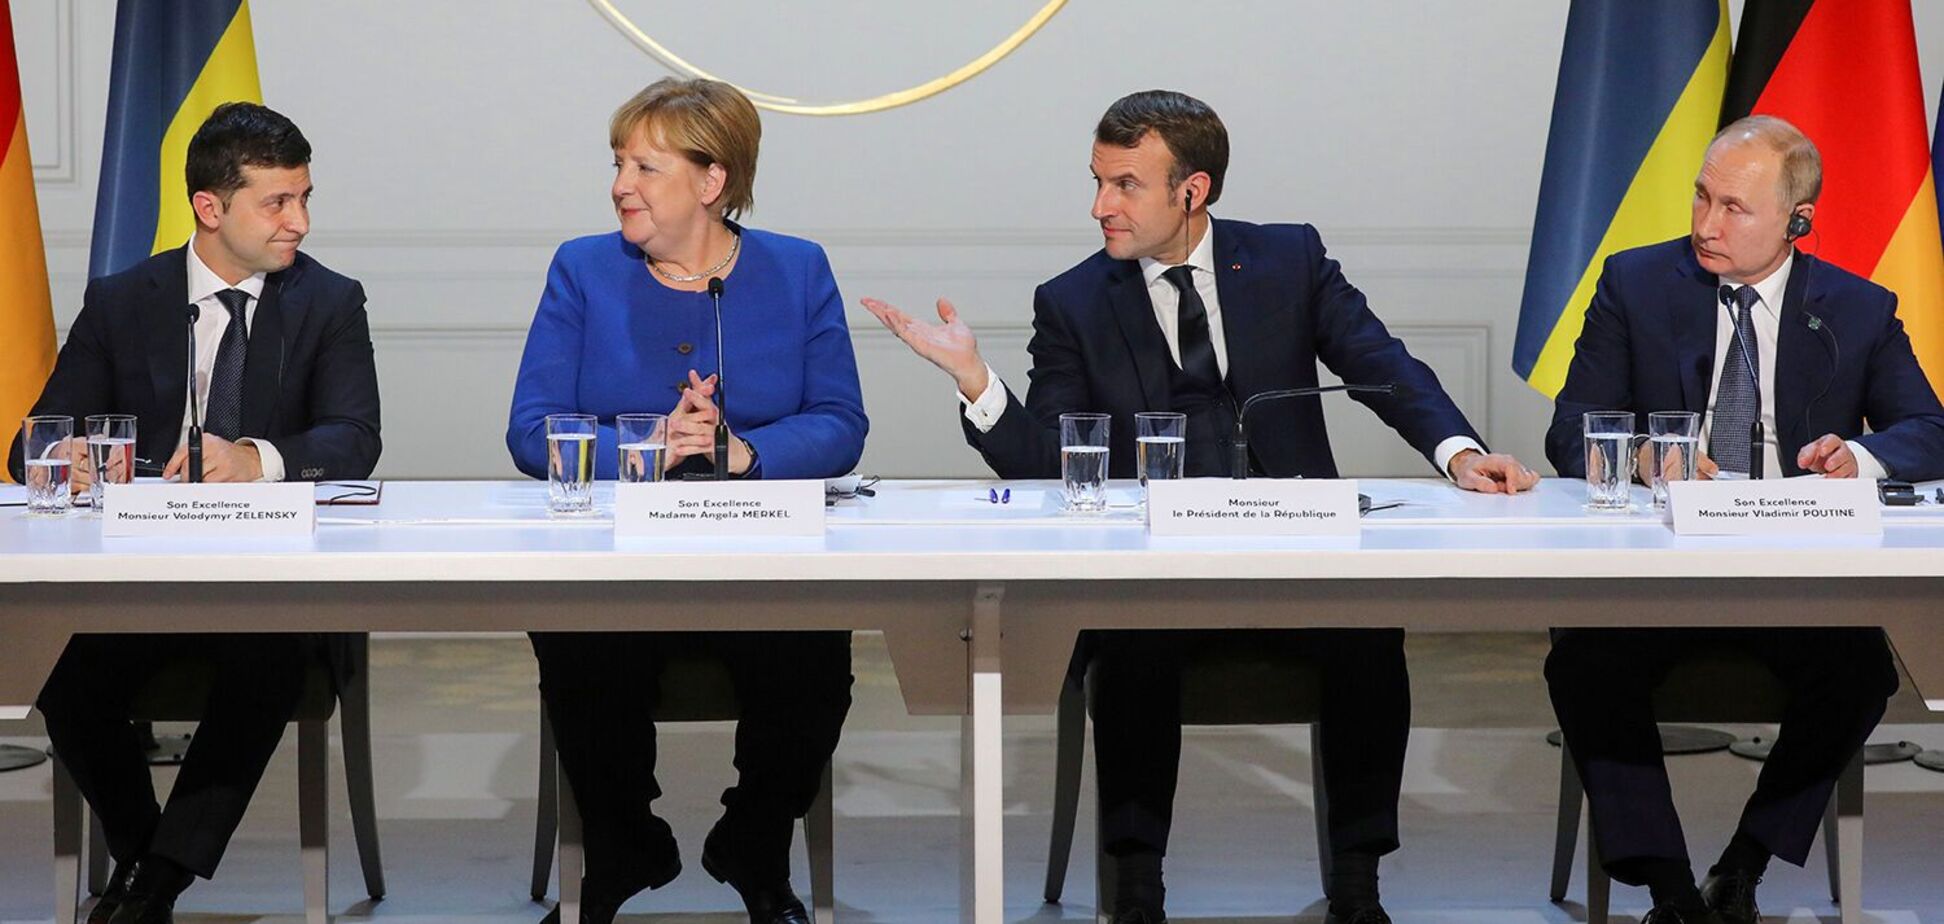 9 декабря 2019 года в Париже прошел саммит Нормандской четверки по разрешению конфликта на Донбассе